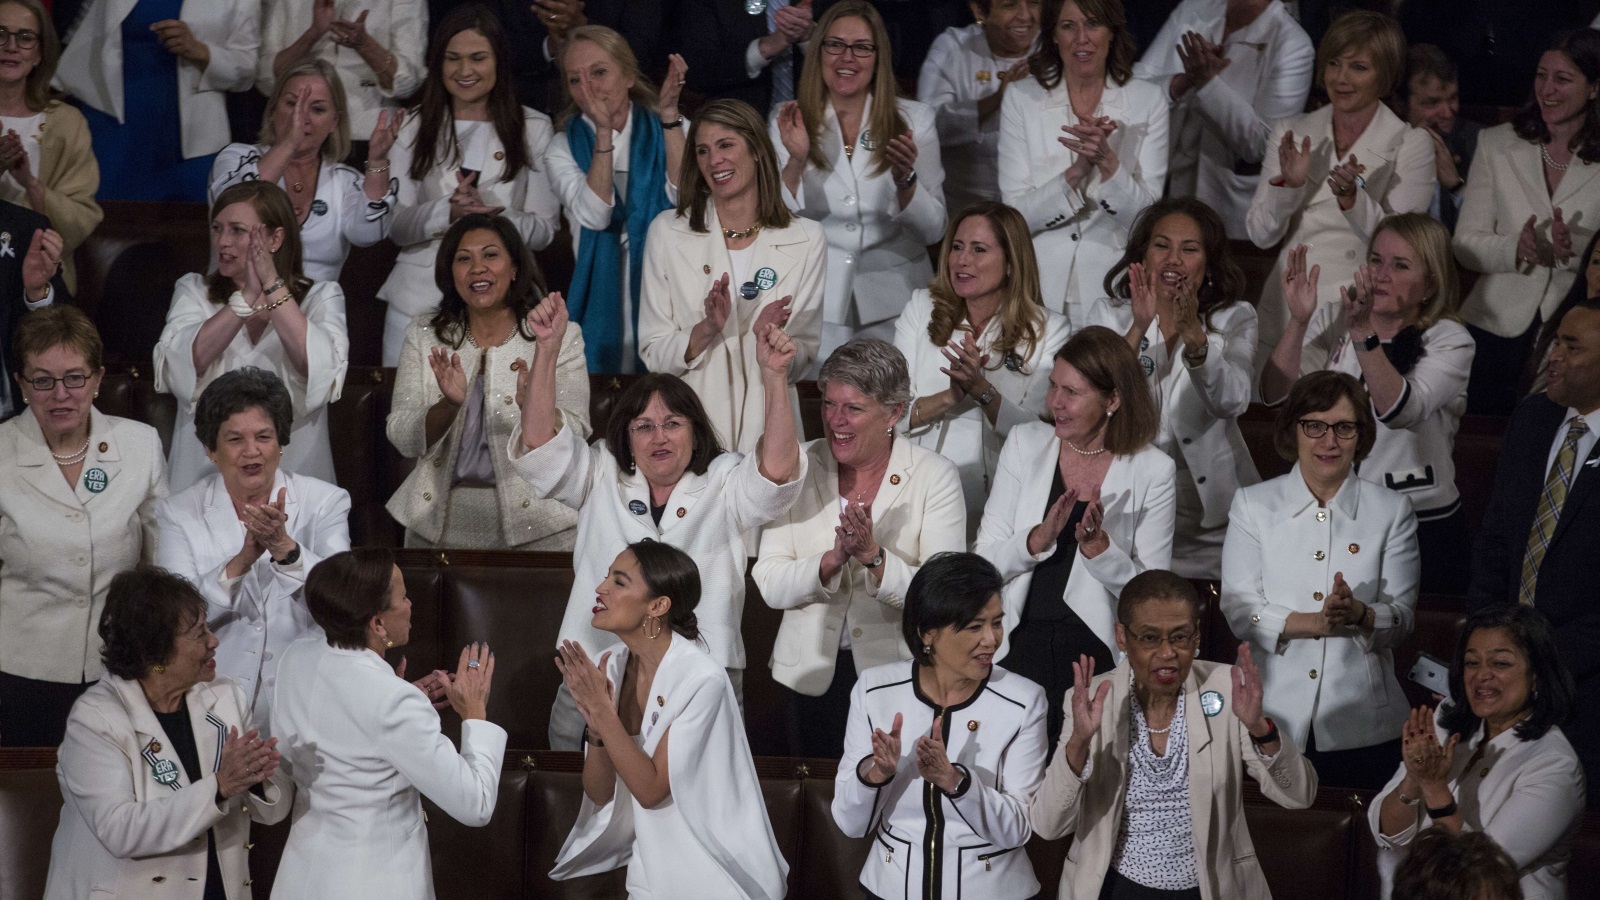 كثير من الديمقراطيات أعضاء الكونغرس ارتدين اللون الأبيض -بمن فيهن رئيسة المجلس نانسي بيلوسي- إظهارا لوحدتهن وجذب الانتباه بصريا (الفرنسية)